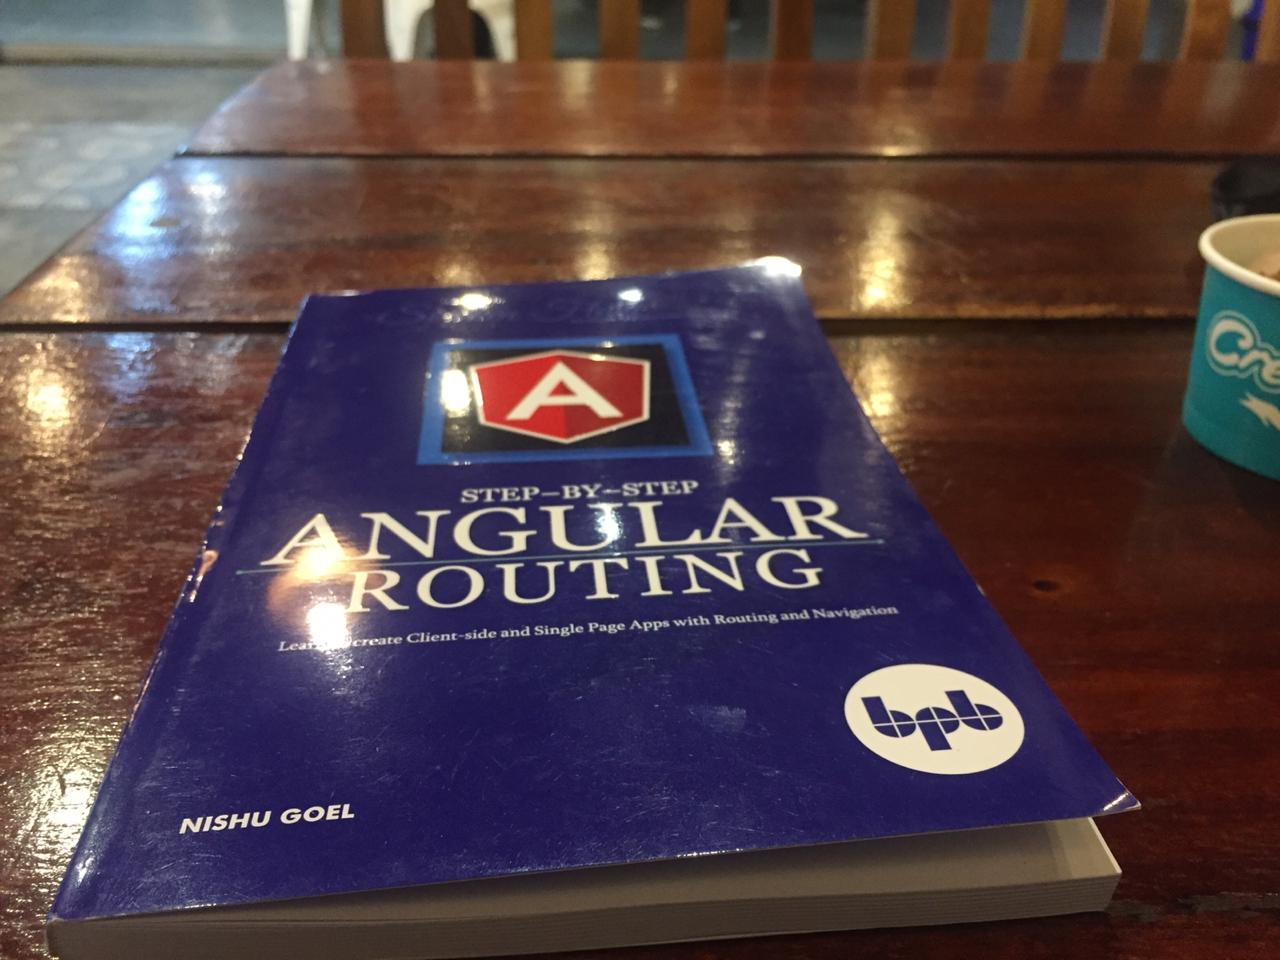 書籍『Angular Routing on a table』。